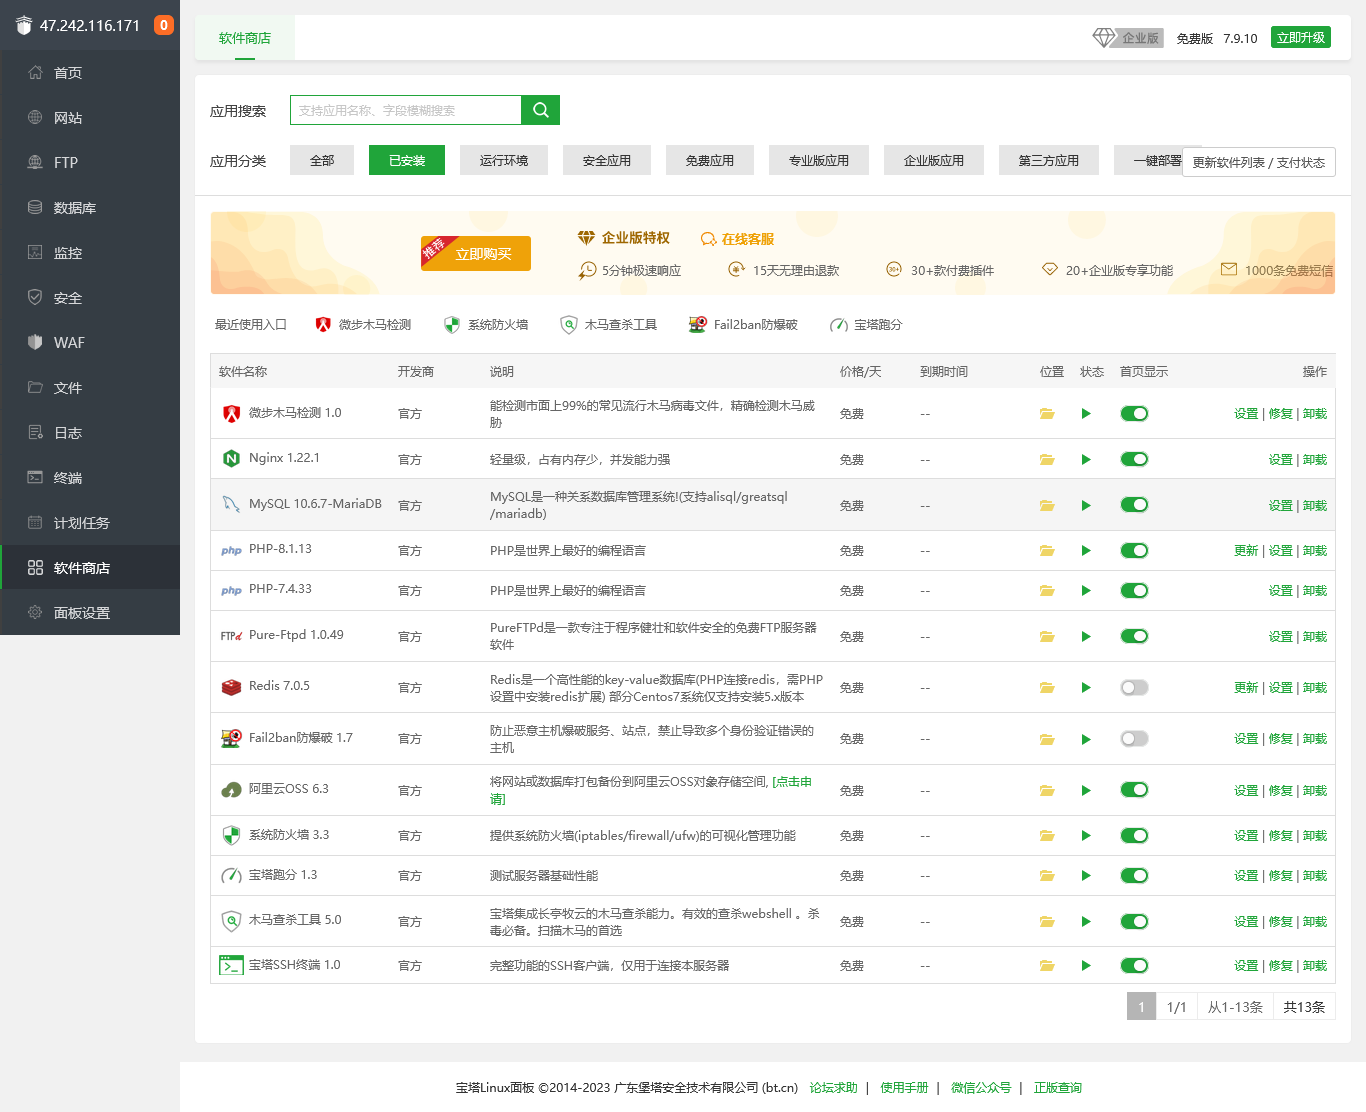 Screenshot 2023-06-08 at 09-57-44 宝塔Linux面板.png